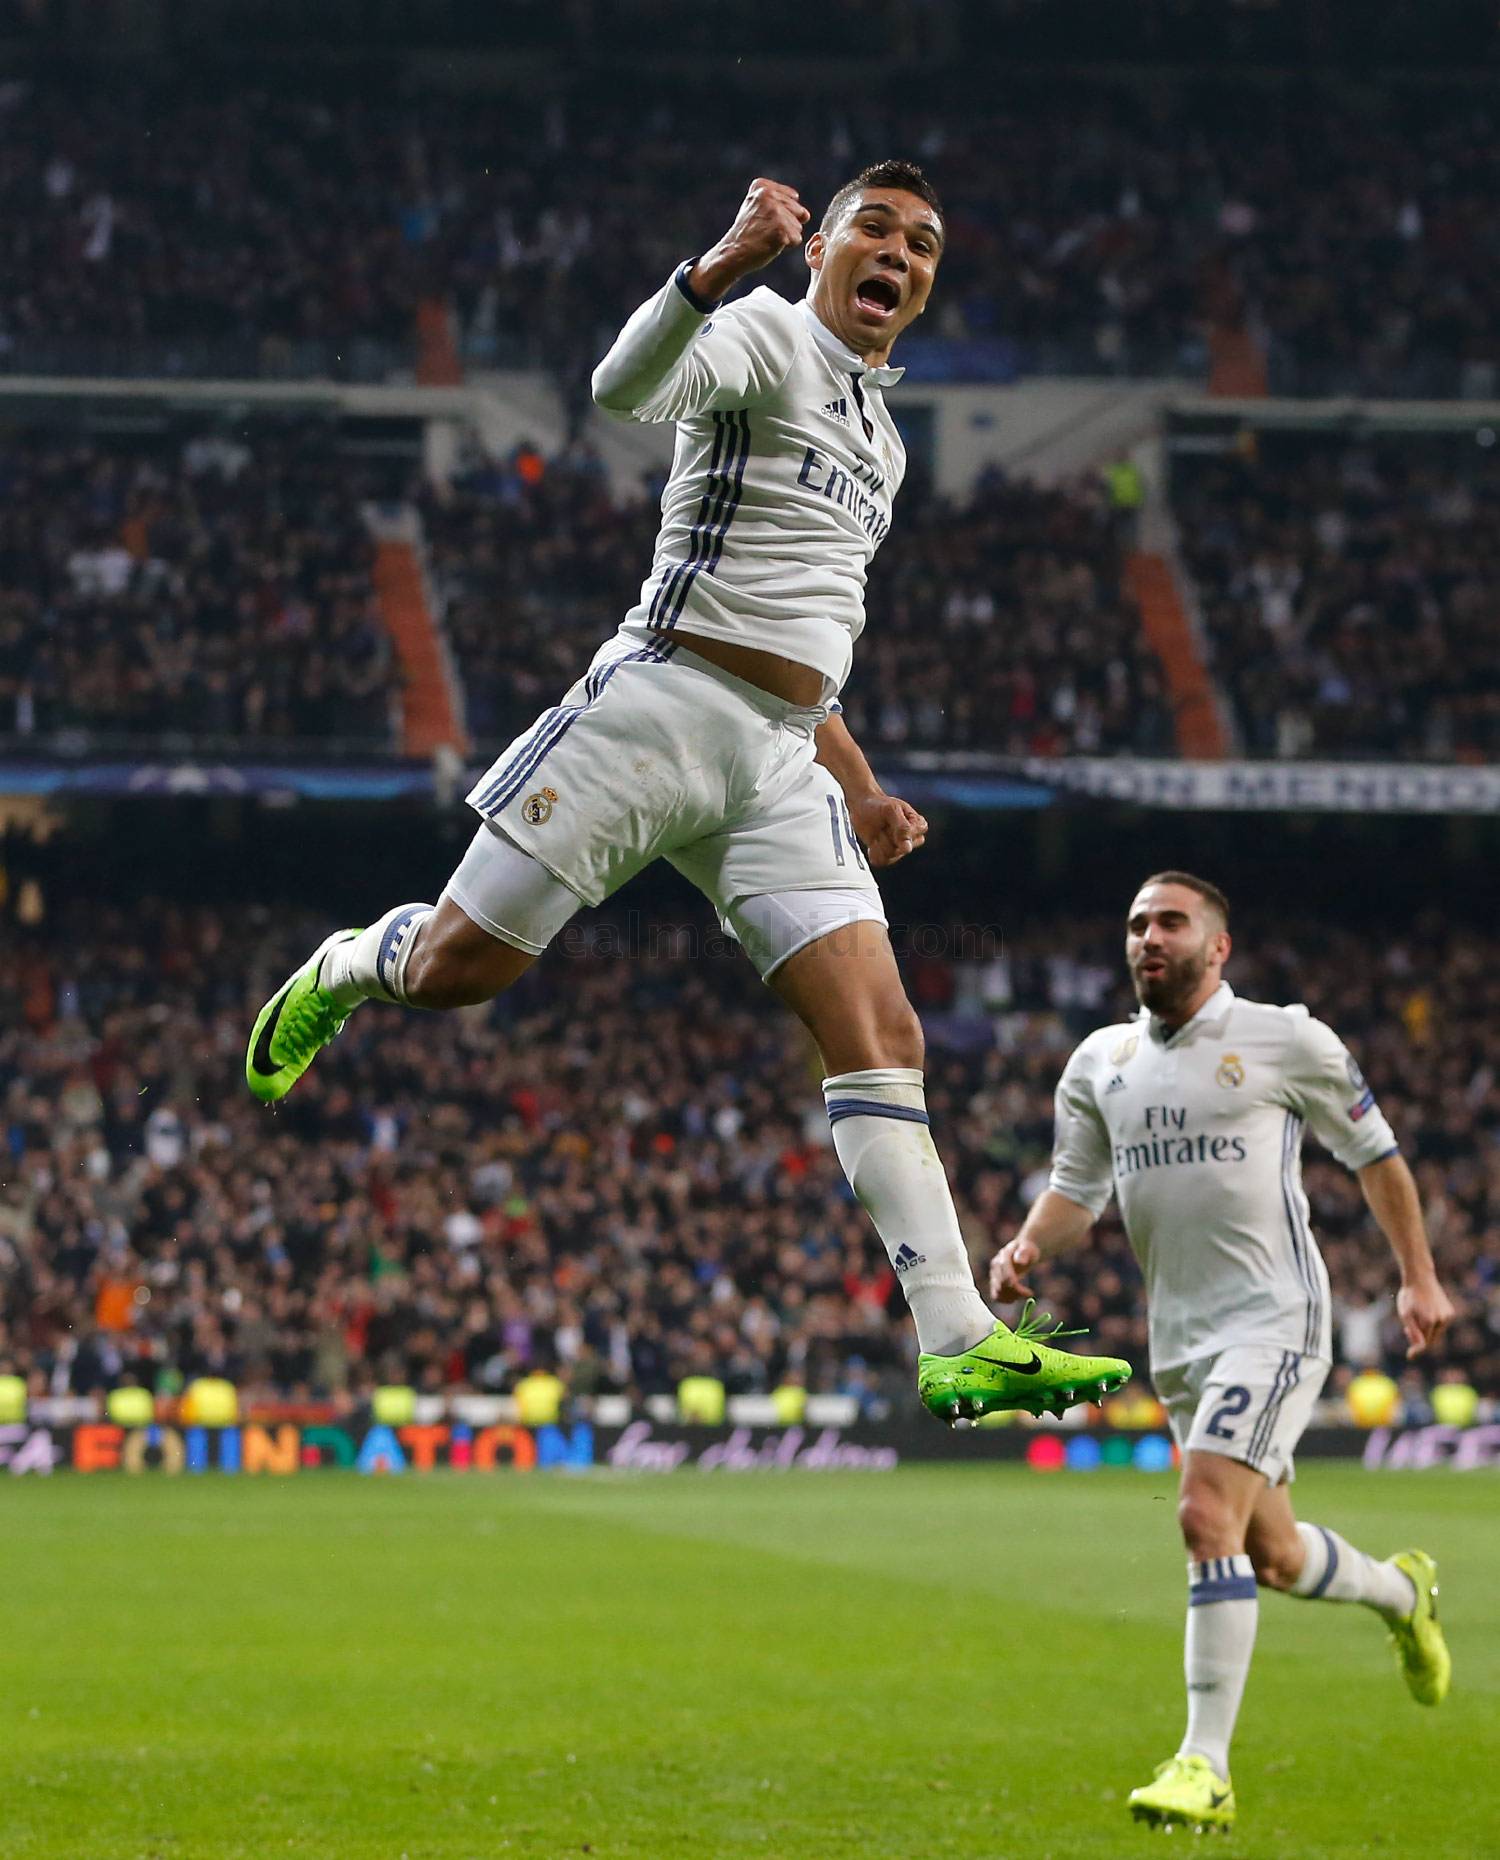 Реал» - «Наполи». Волевая победа Мадрида и уникальный гол Каземиро -  Великий «Реал Мадрид» - Блоги - Sports.ru